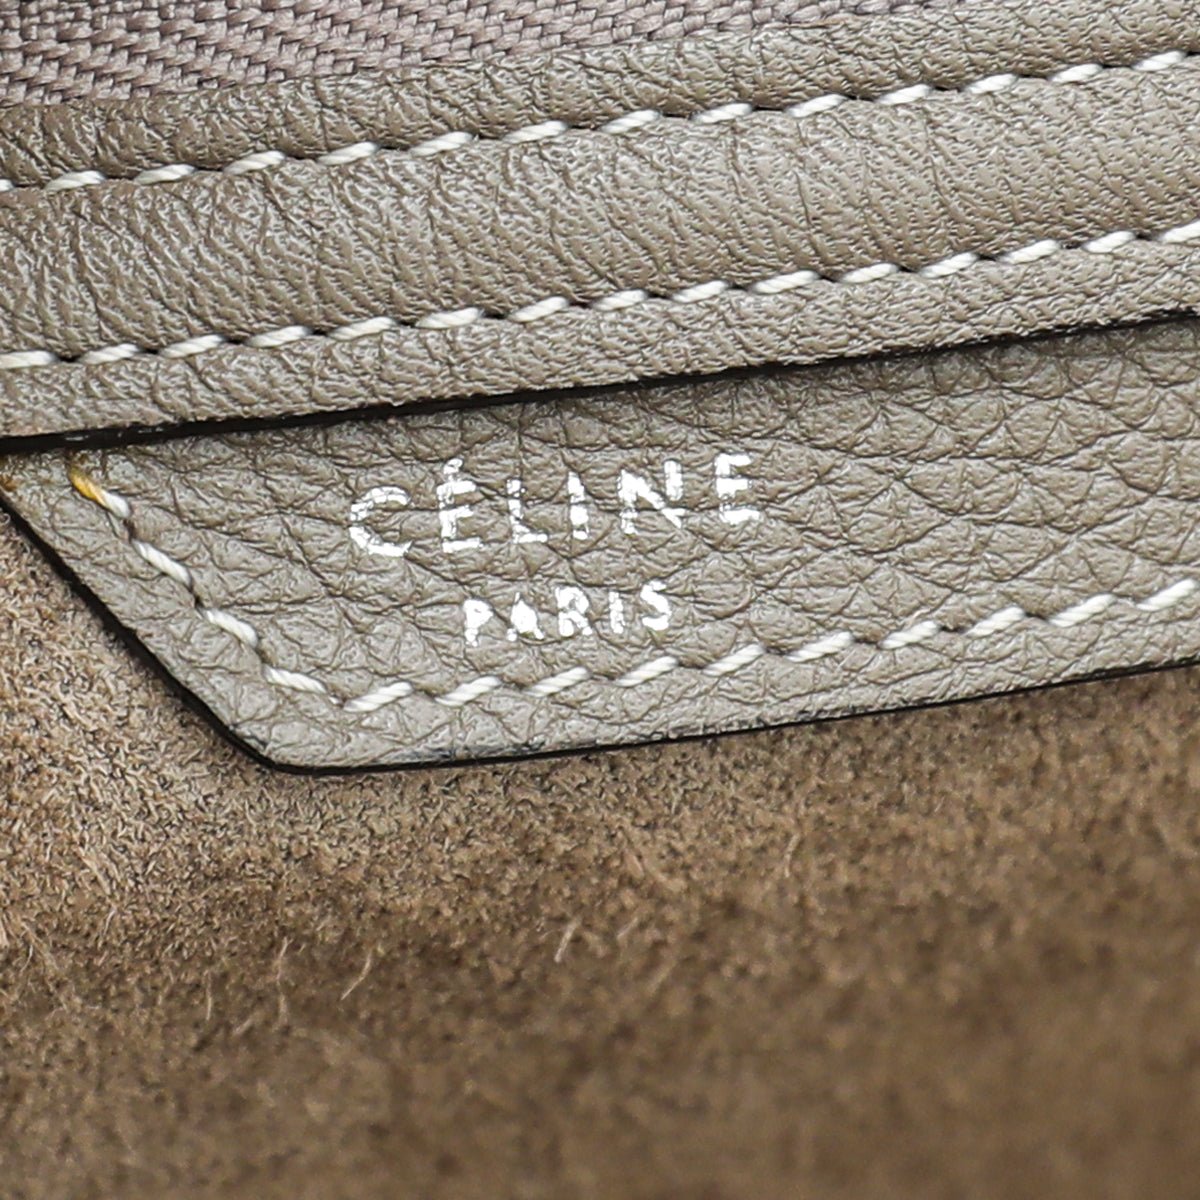 Celine - Celine Souris Mini Luggage Bag | The Closet